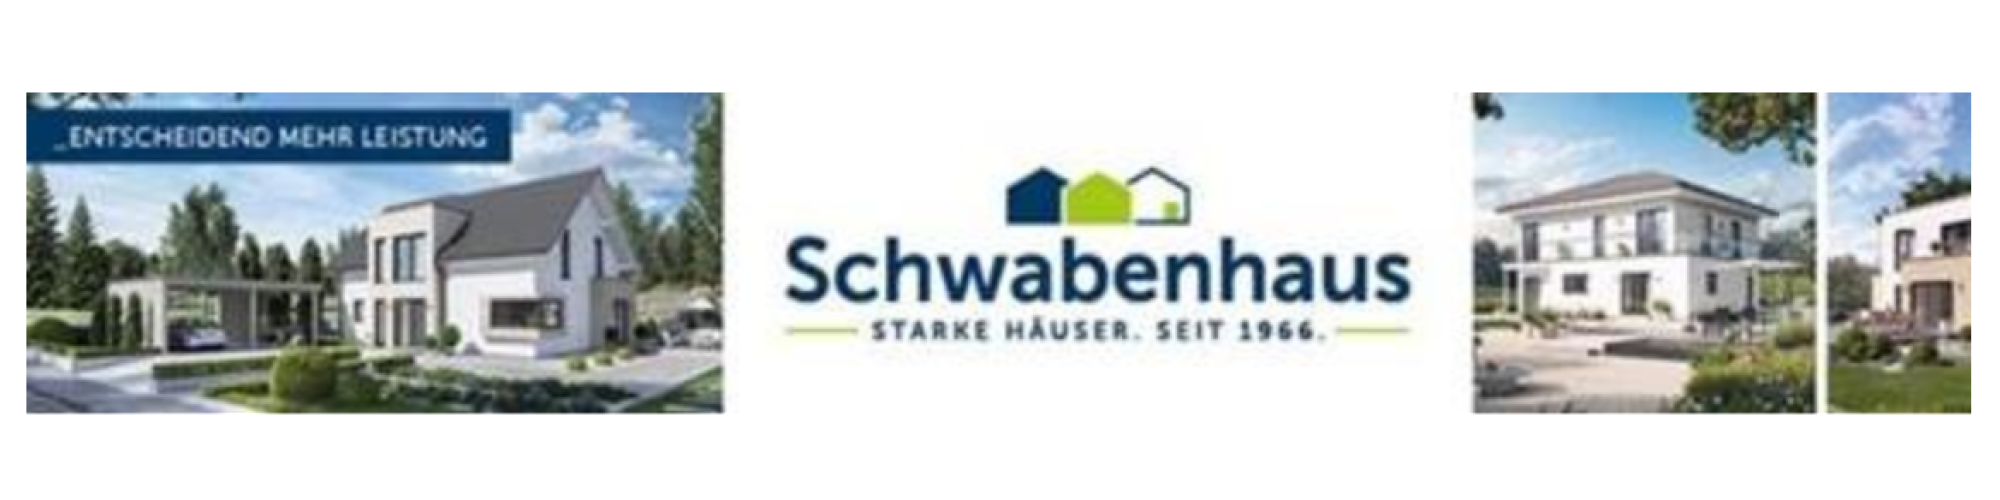 Schwabenhaus GmbH & Co. KG  